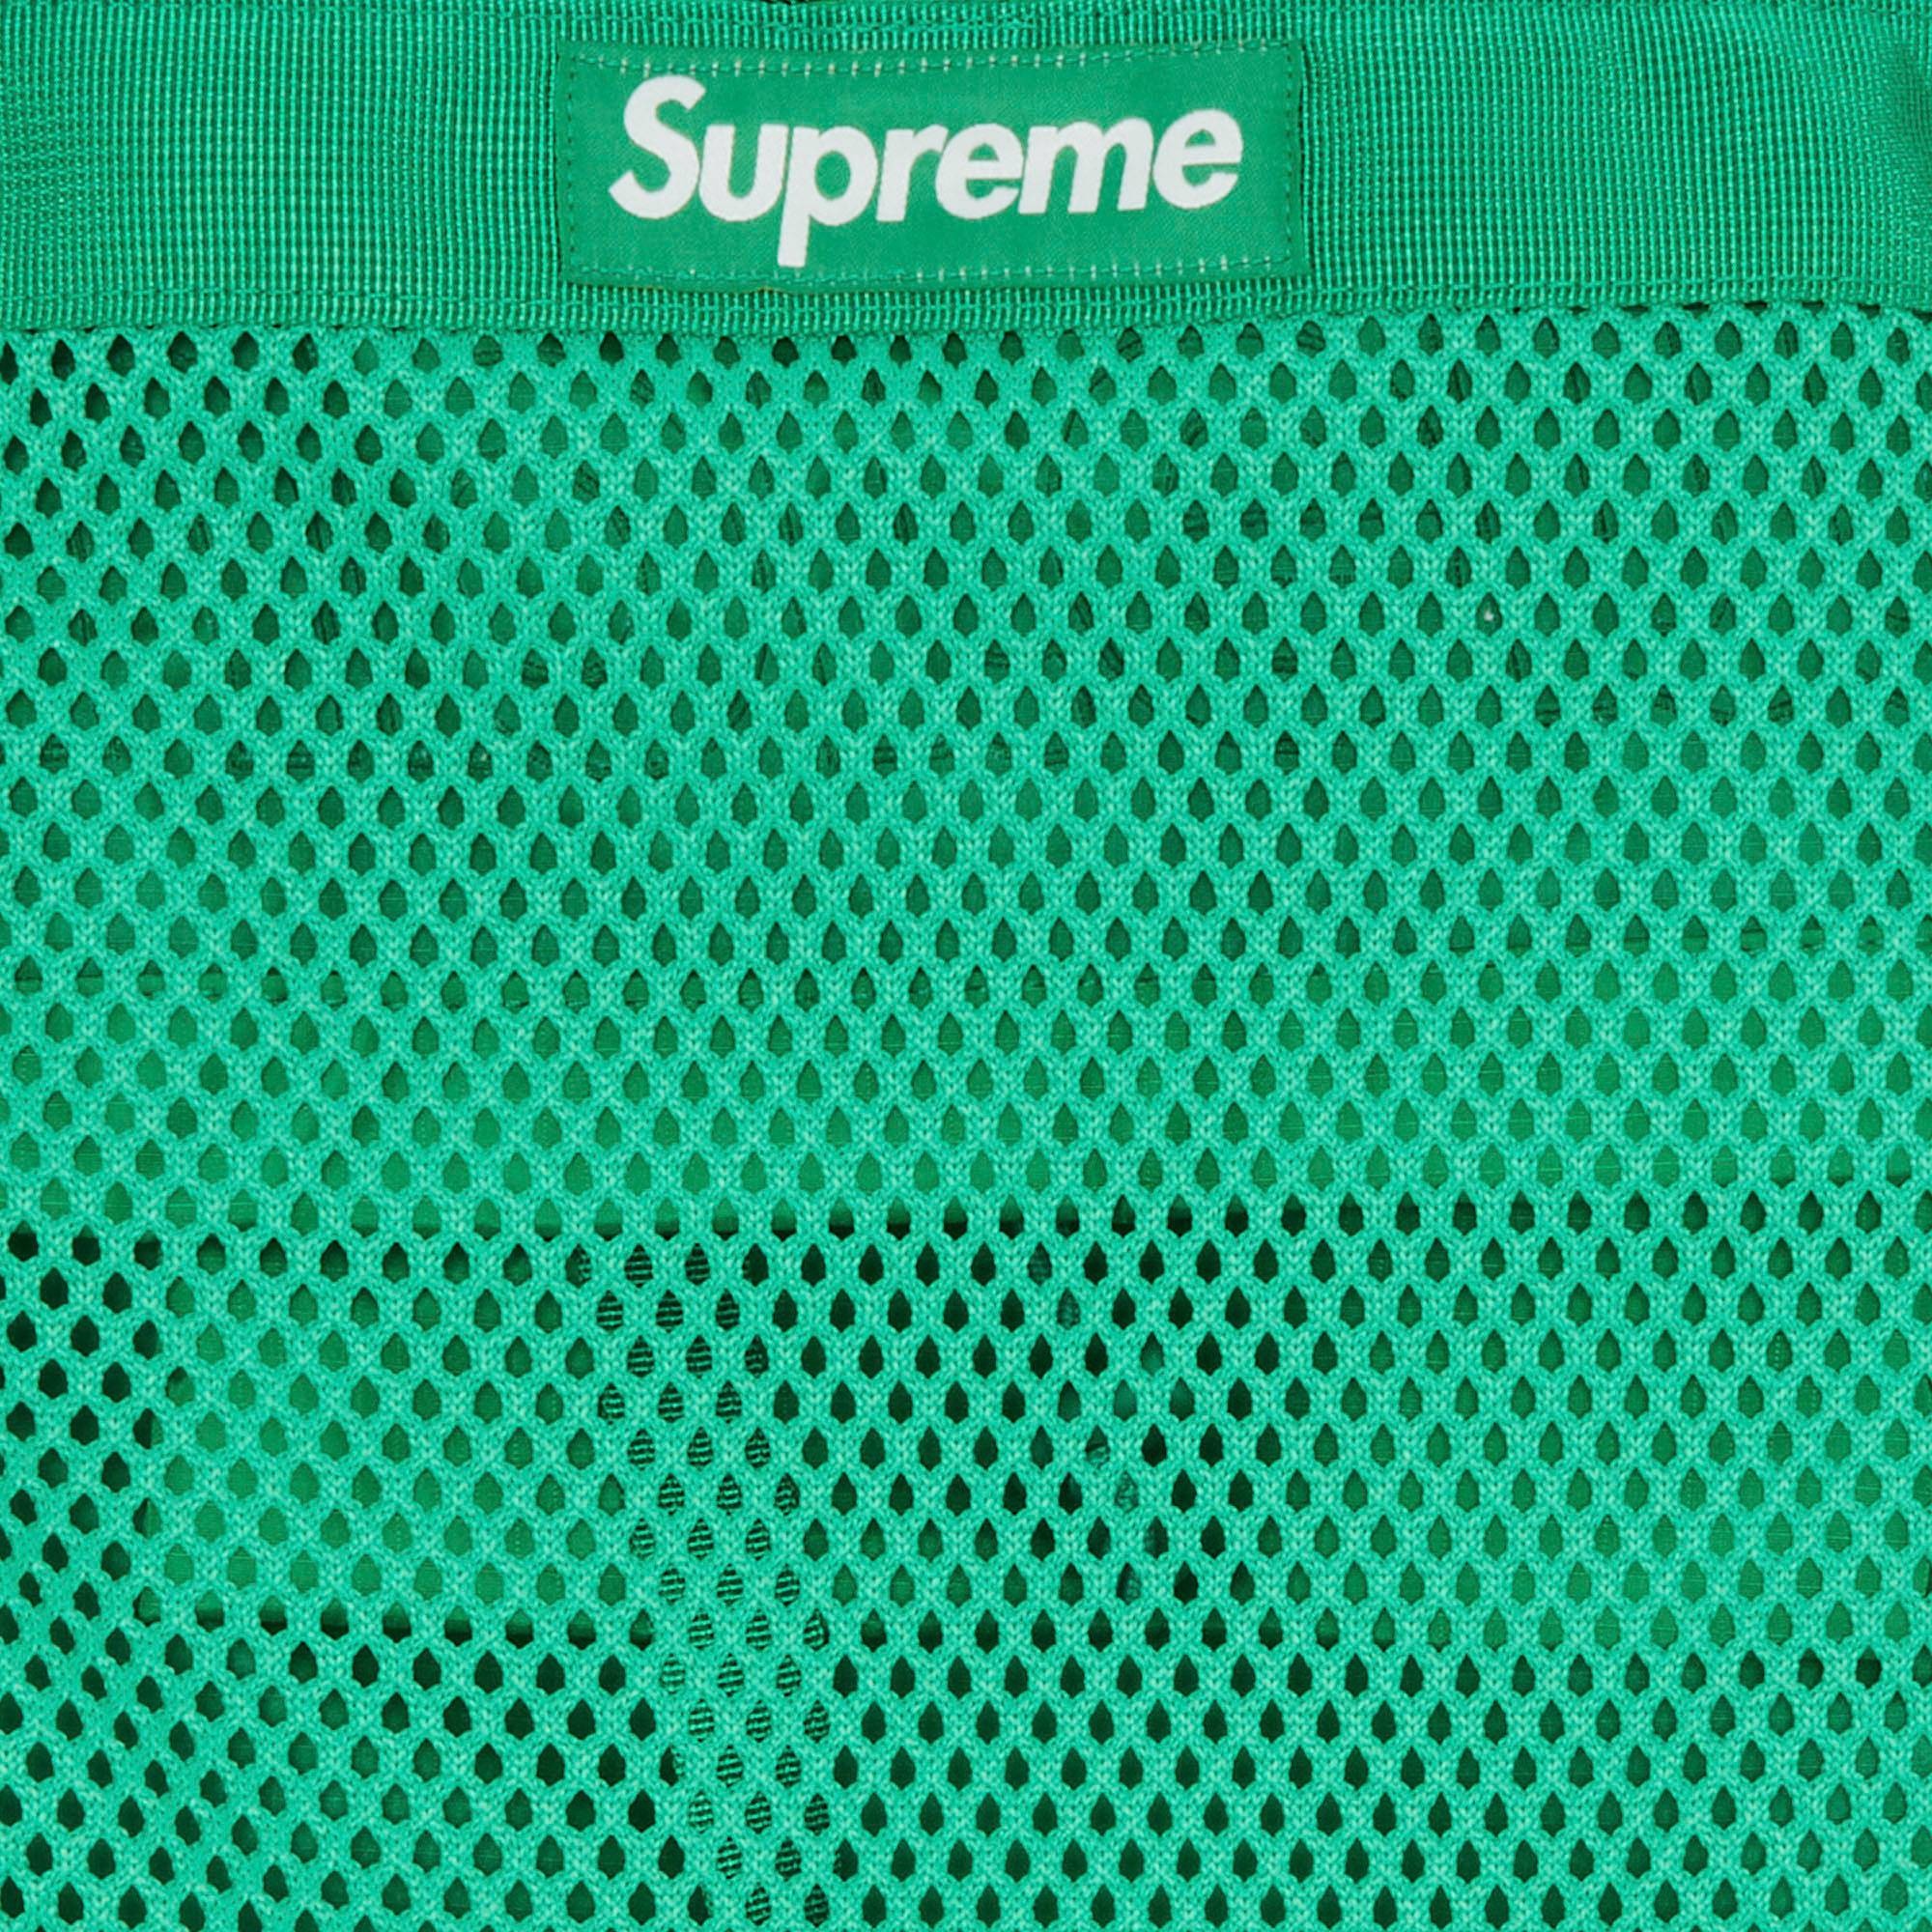 Supreme Mesh Backpack 'Green' - 3